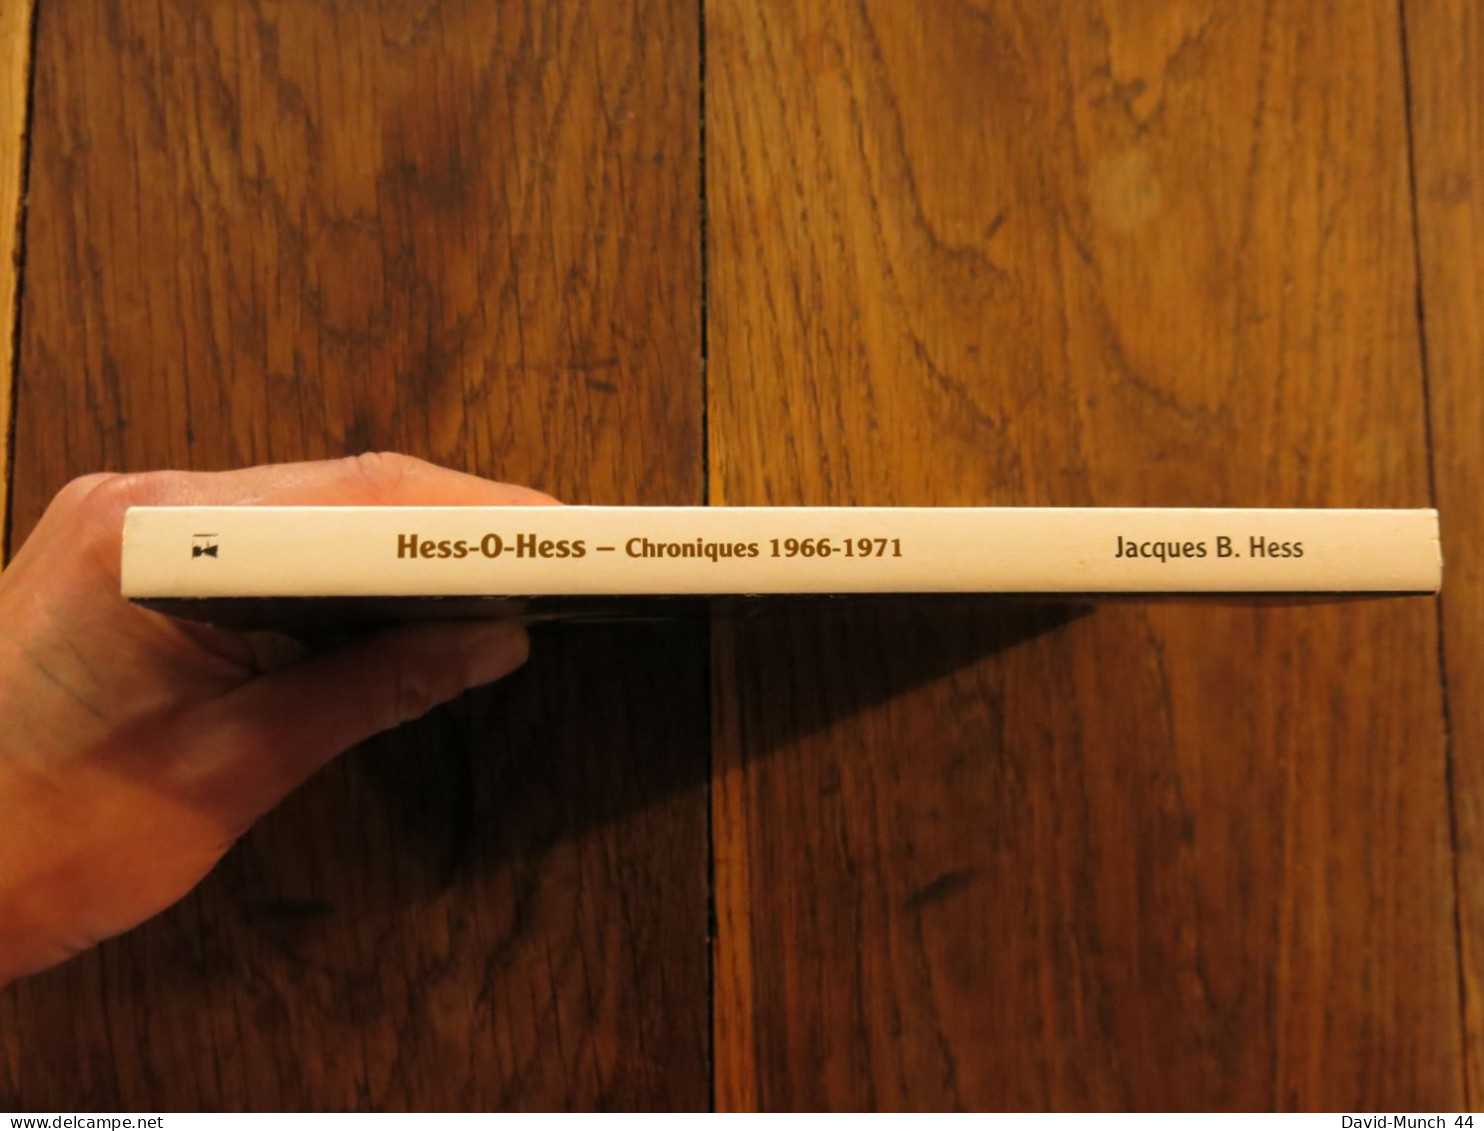 Hess-O-Hess, Chroniques 1966-1971 De Jacques B. Hess. Alter Ego éditions, Jazz Impressions. 2013 - Música